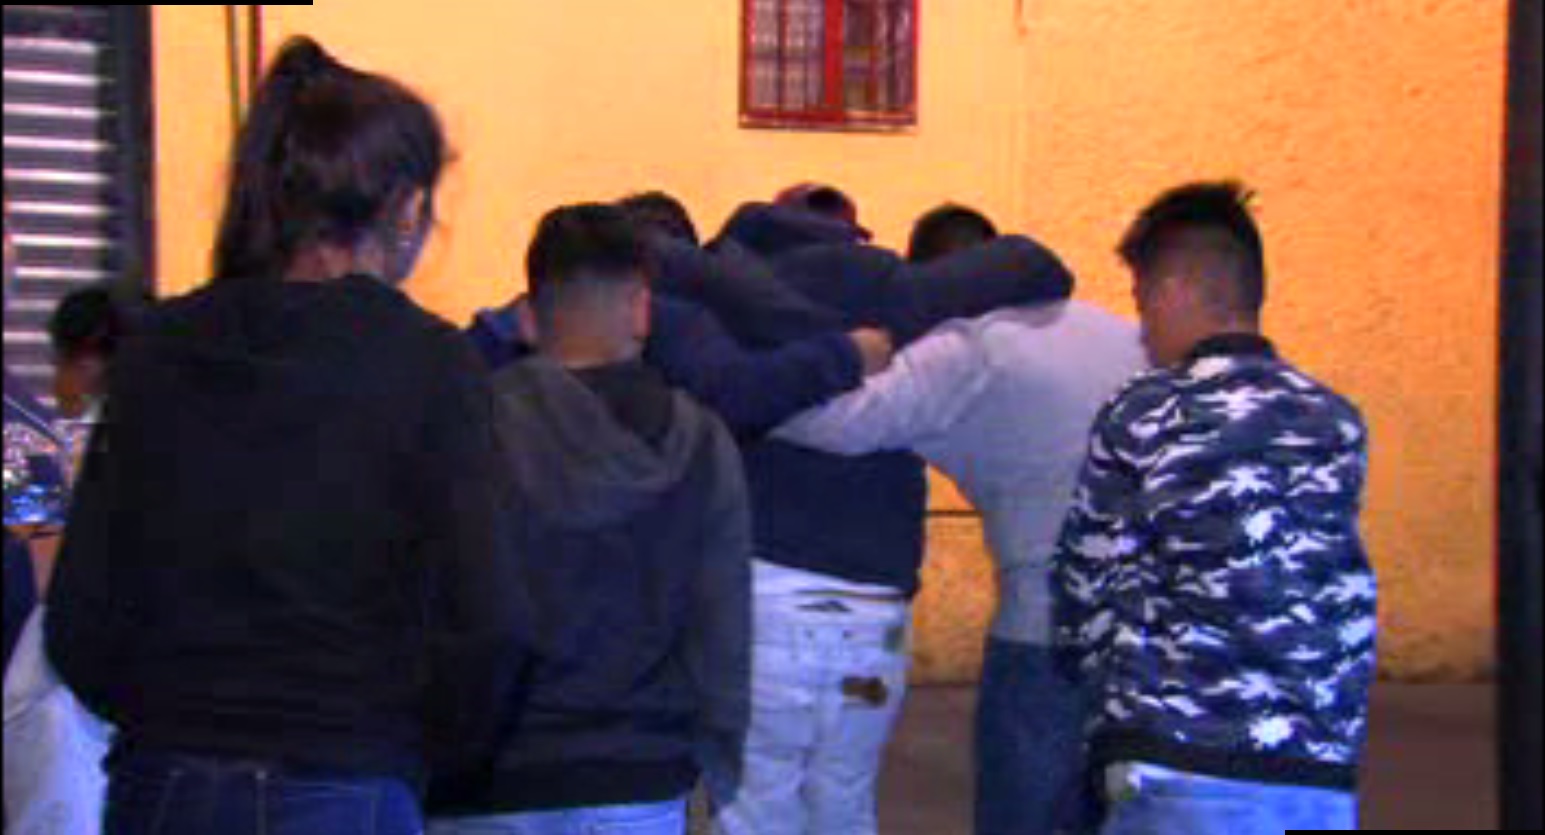 Vecinos ayudan a una persona que fue alcanzada por una bala en la colonia Morelos (Noticieros Televisa)